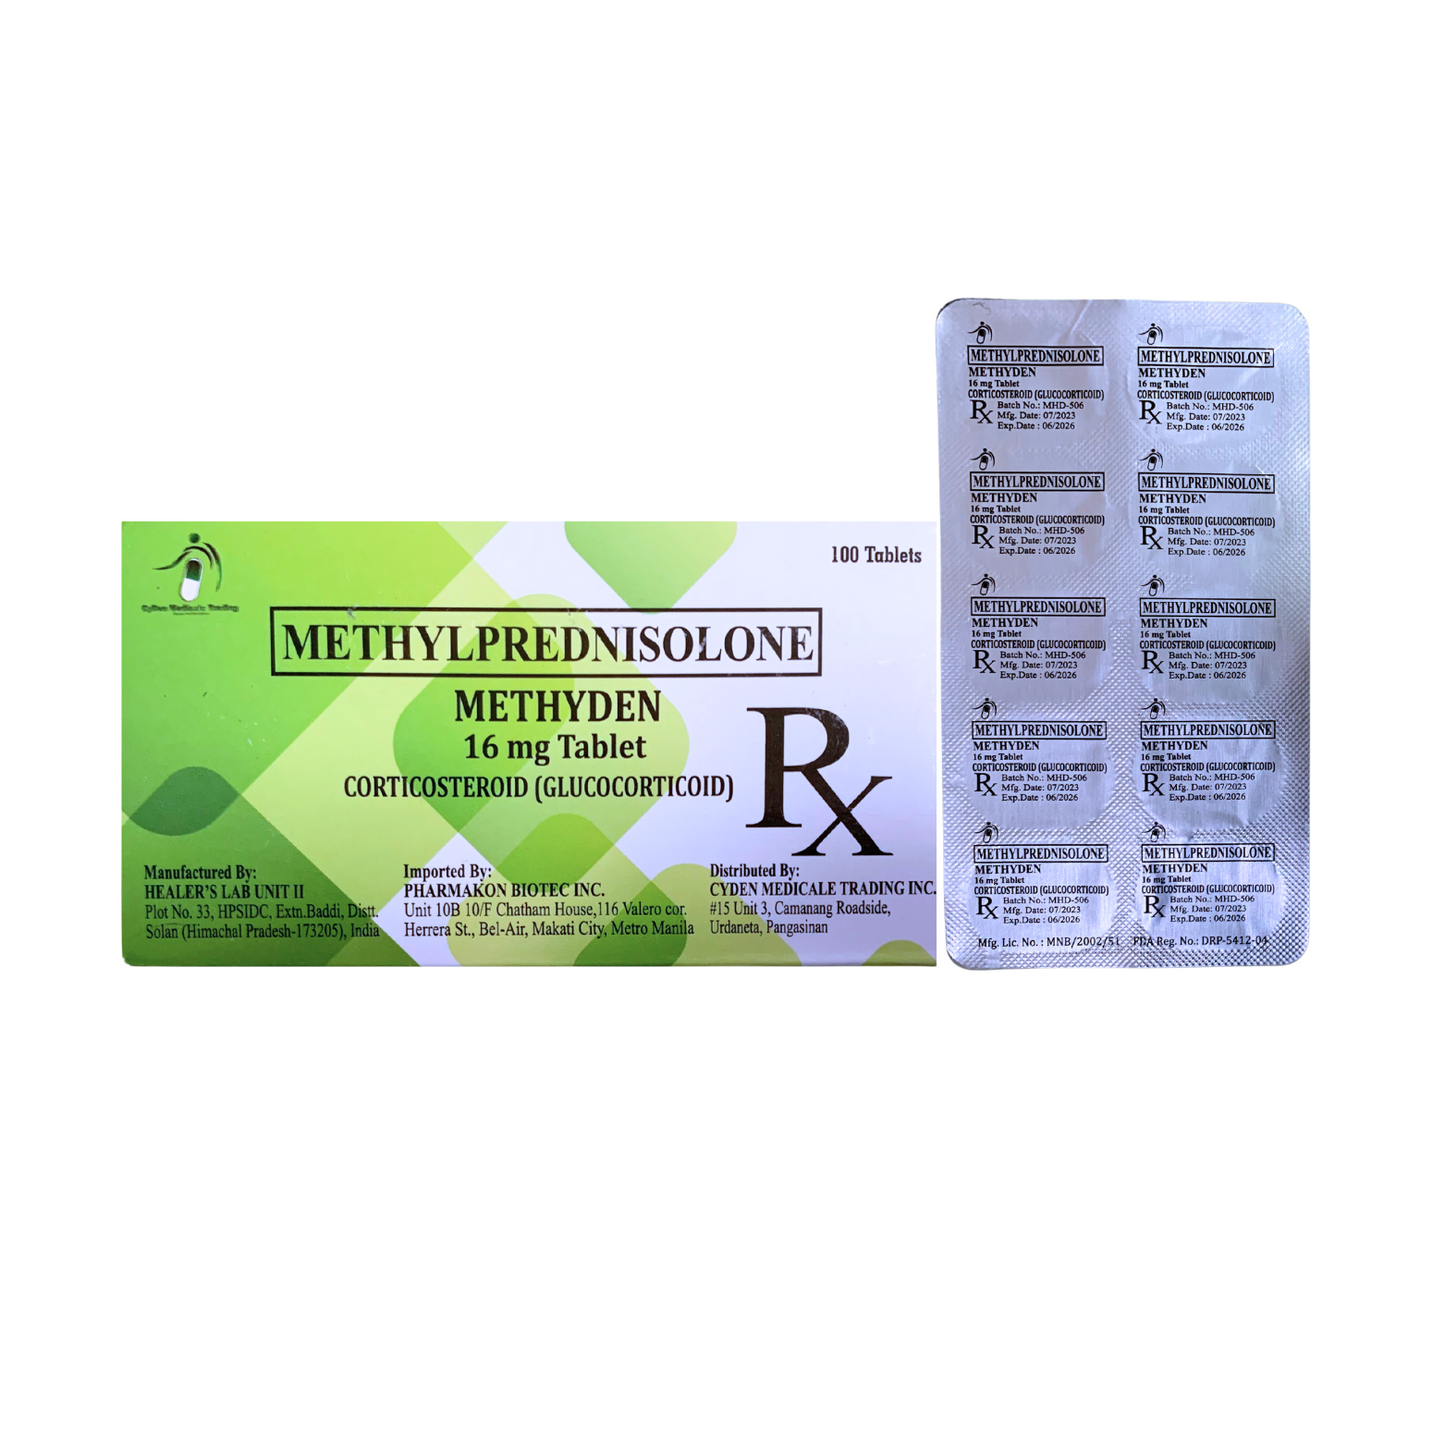 MEDIXON Methylprednisolone 16mg Tablet x 1